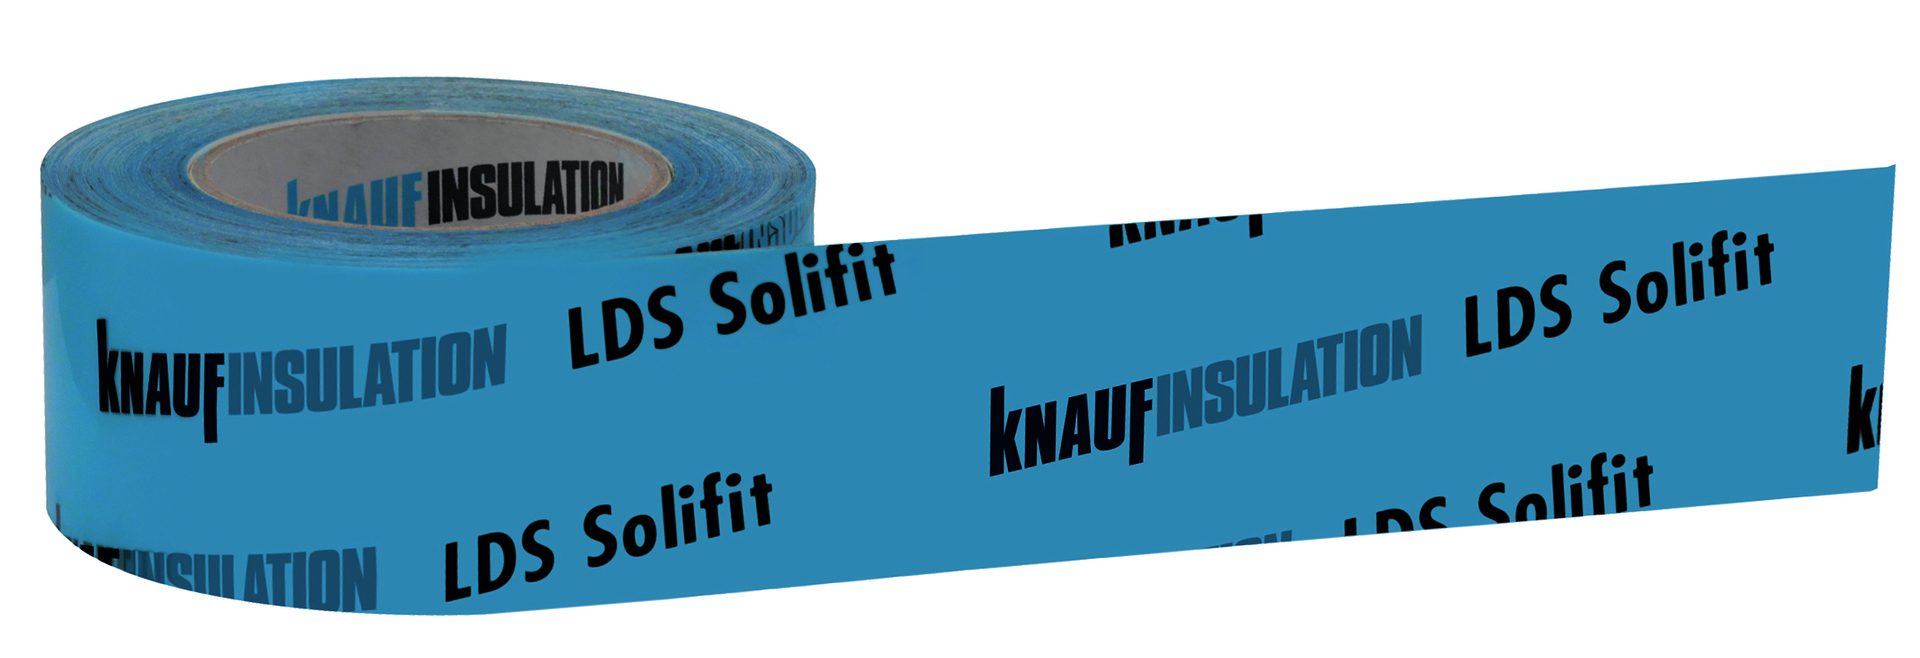 ZEB Knauf Insulation LDS Solifit blau S